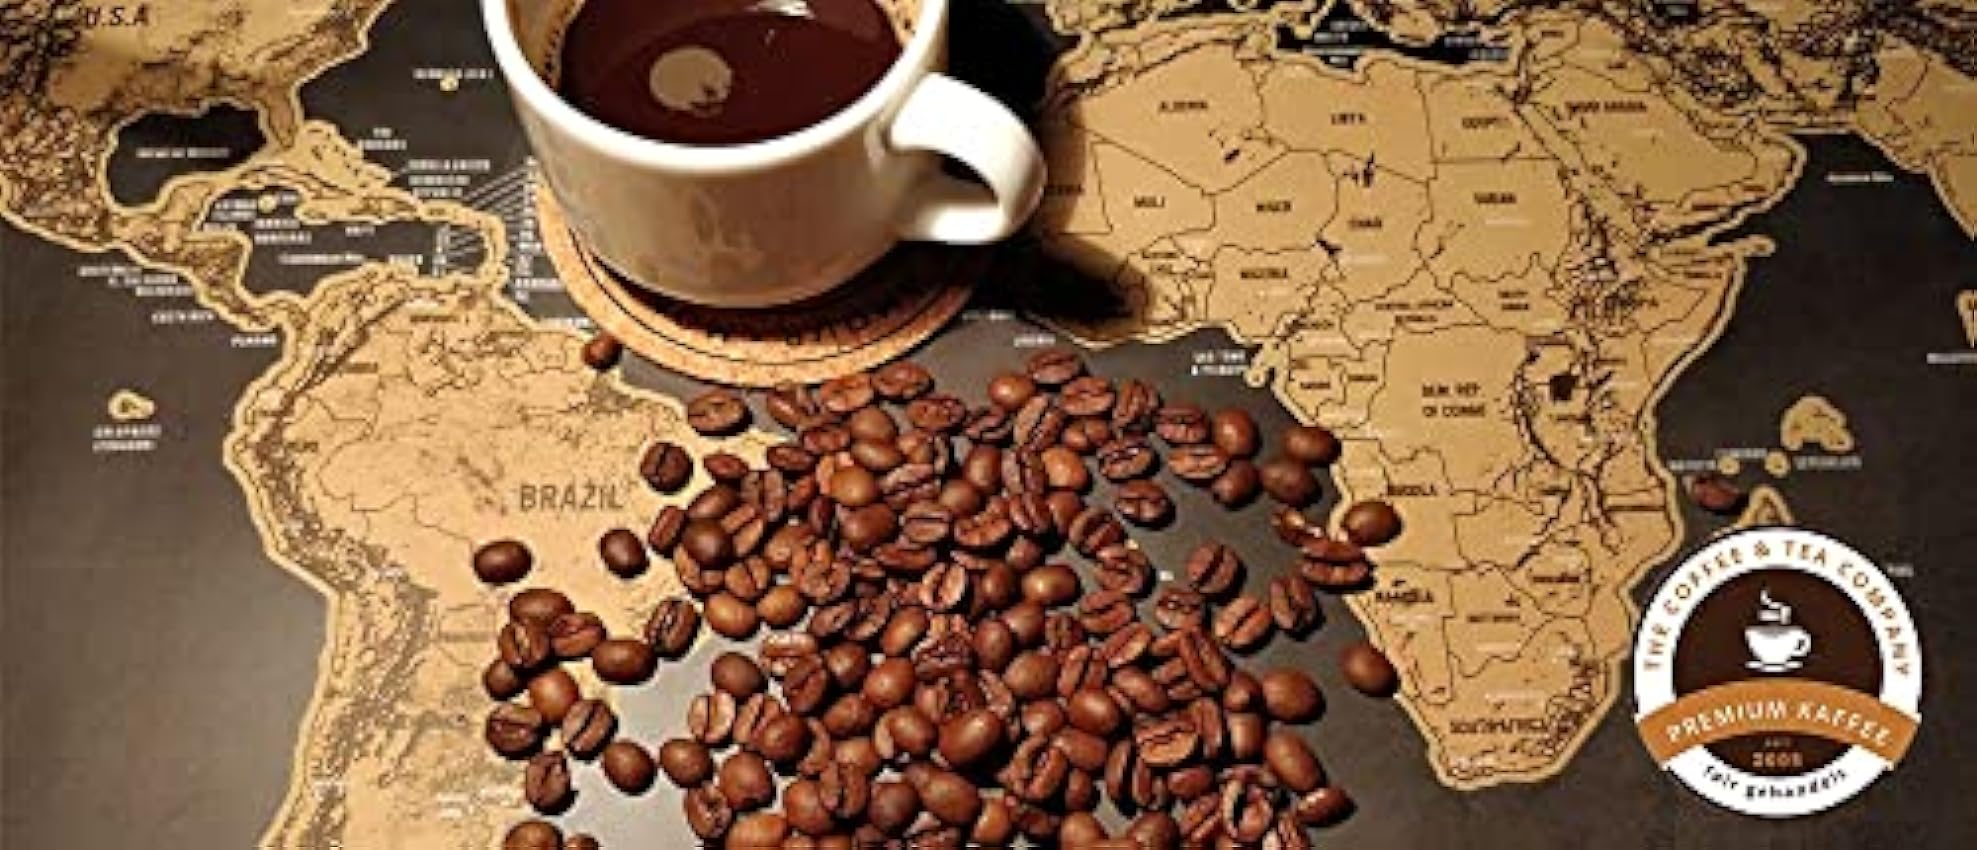 C& T Coffret café moulu | 5 x 65g de café moulu du monde entier | coffret cafe moulu Mexique + Brésil + Pérou + Honduras + Kenya | Déjà emballé dans un café moulu coffret MC4IaXZE